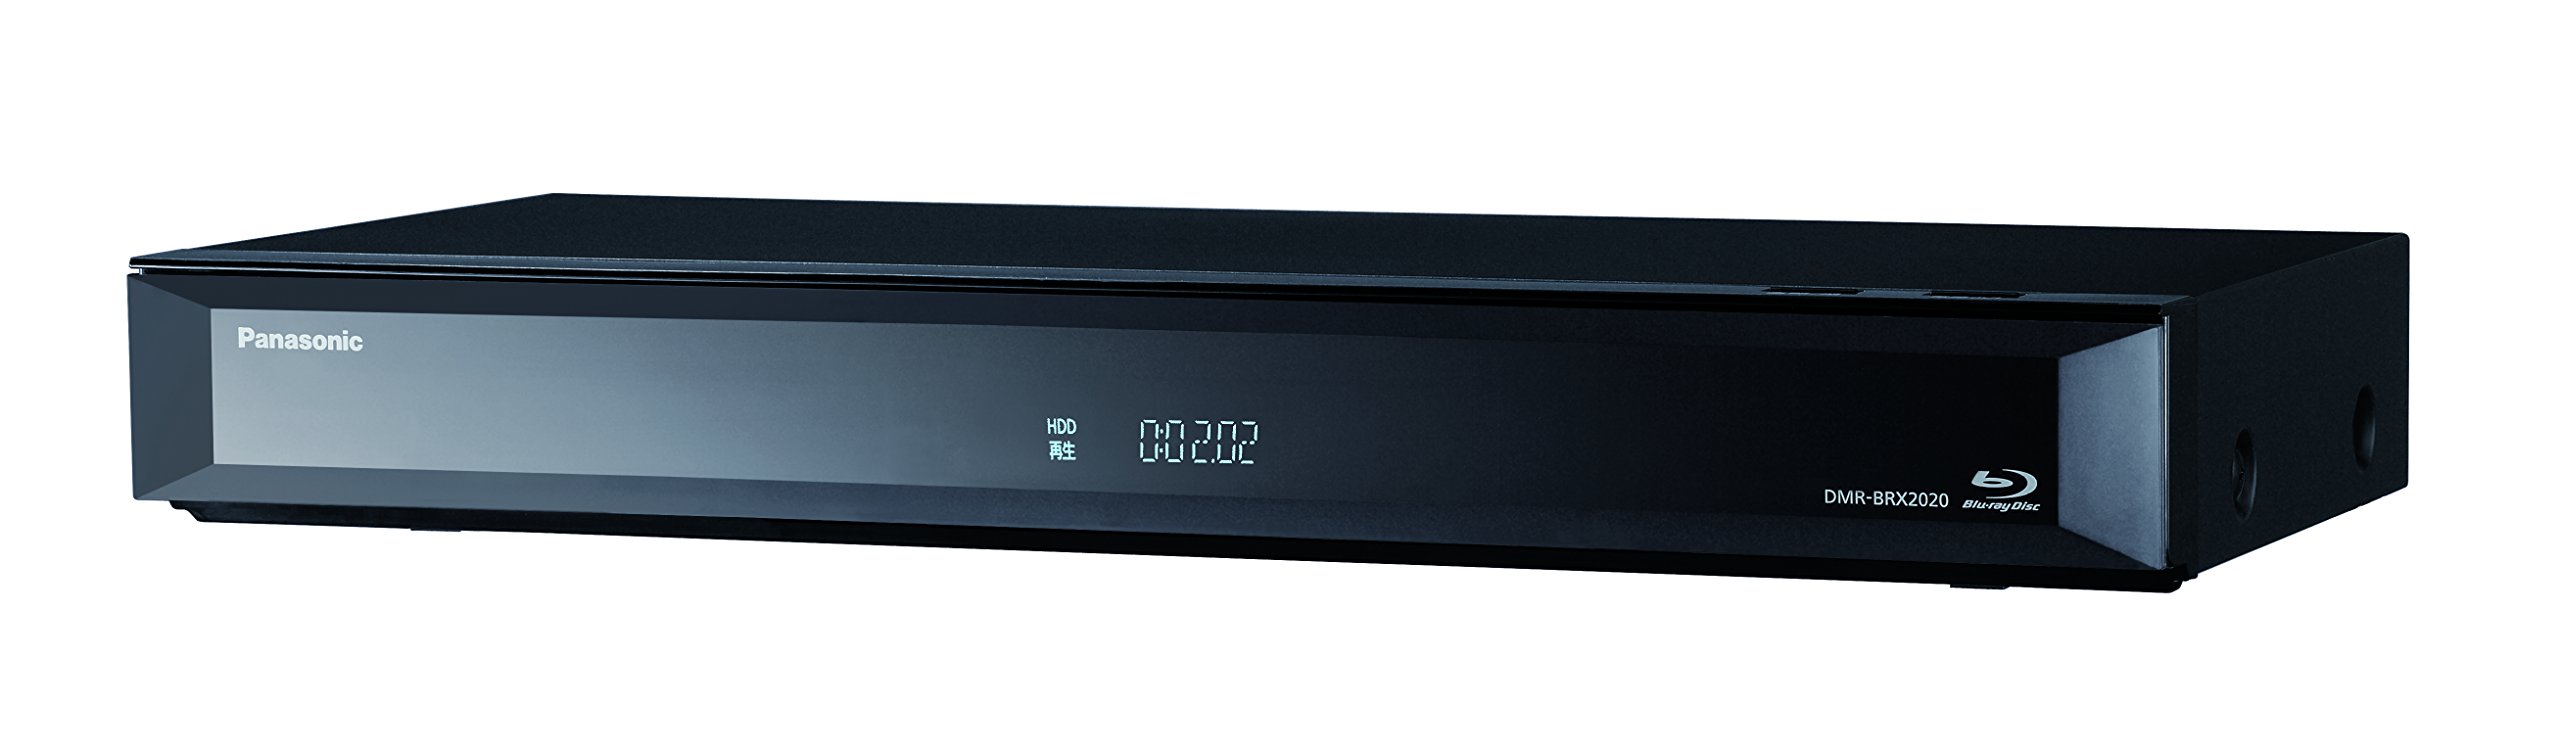 パナソニック 2TB 7チューナー ブルーレイレコーダー 全録 6チャンネル同時録画 4Kアップコンバート対応 ブラック 全自動 DIGA DMR-BRX20